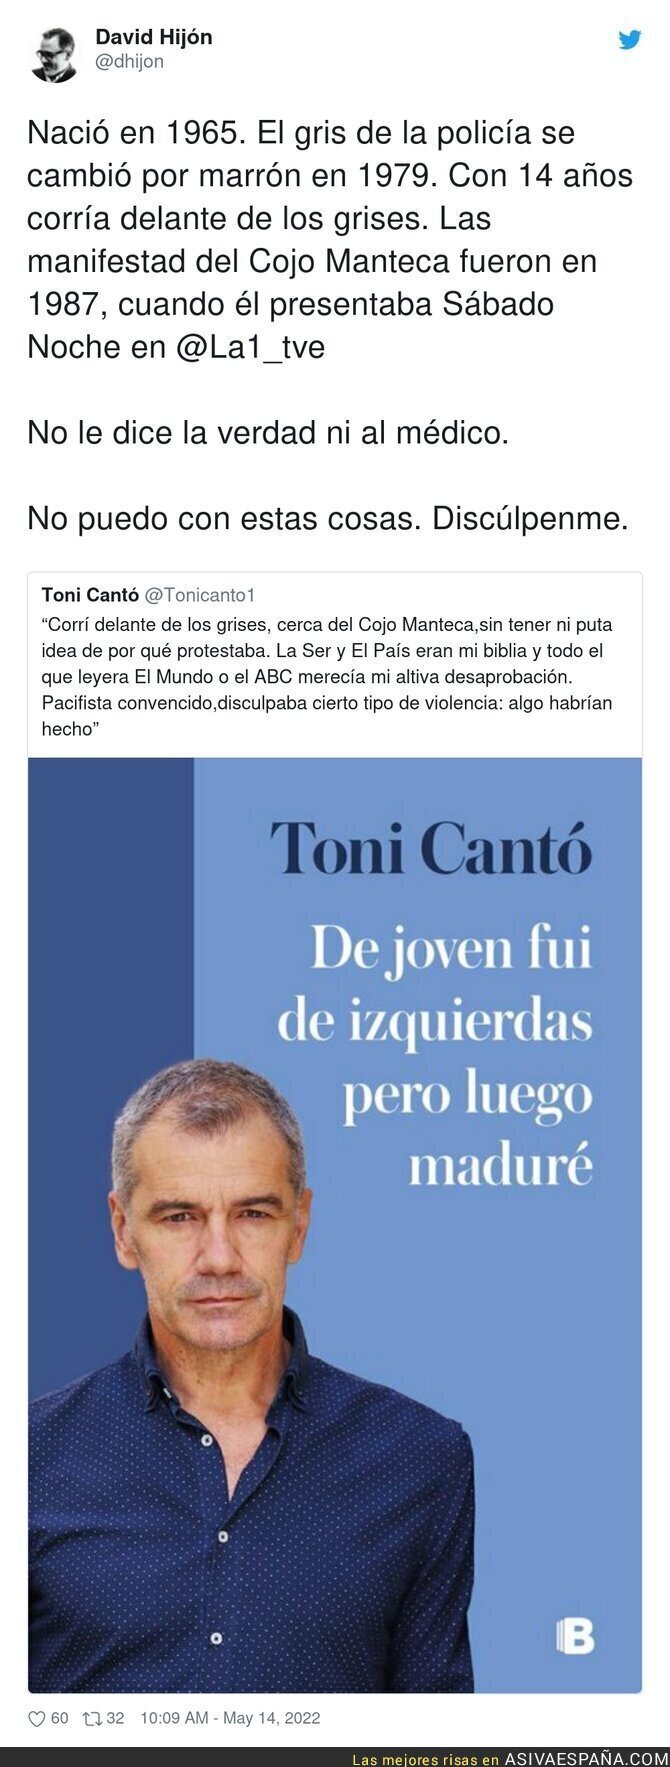 Toni Cantó ha sido pillado mintiendo en todo lo que ha escrito en este tuit